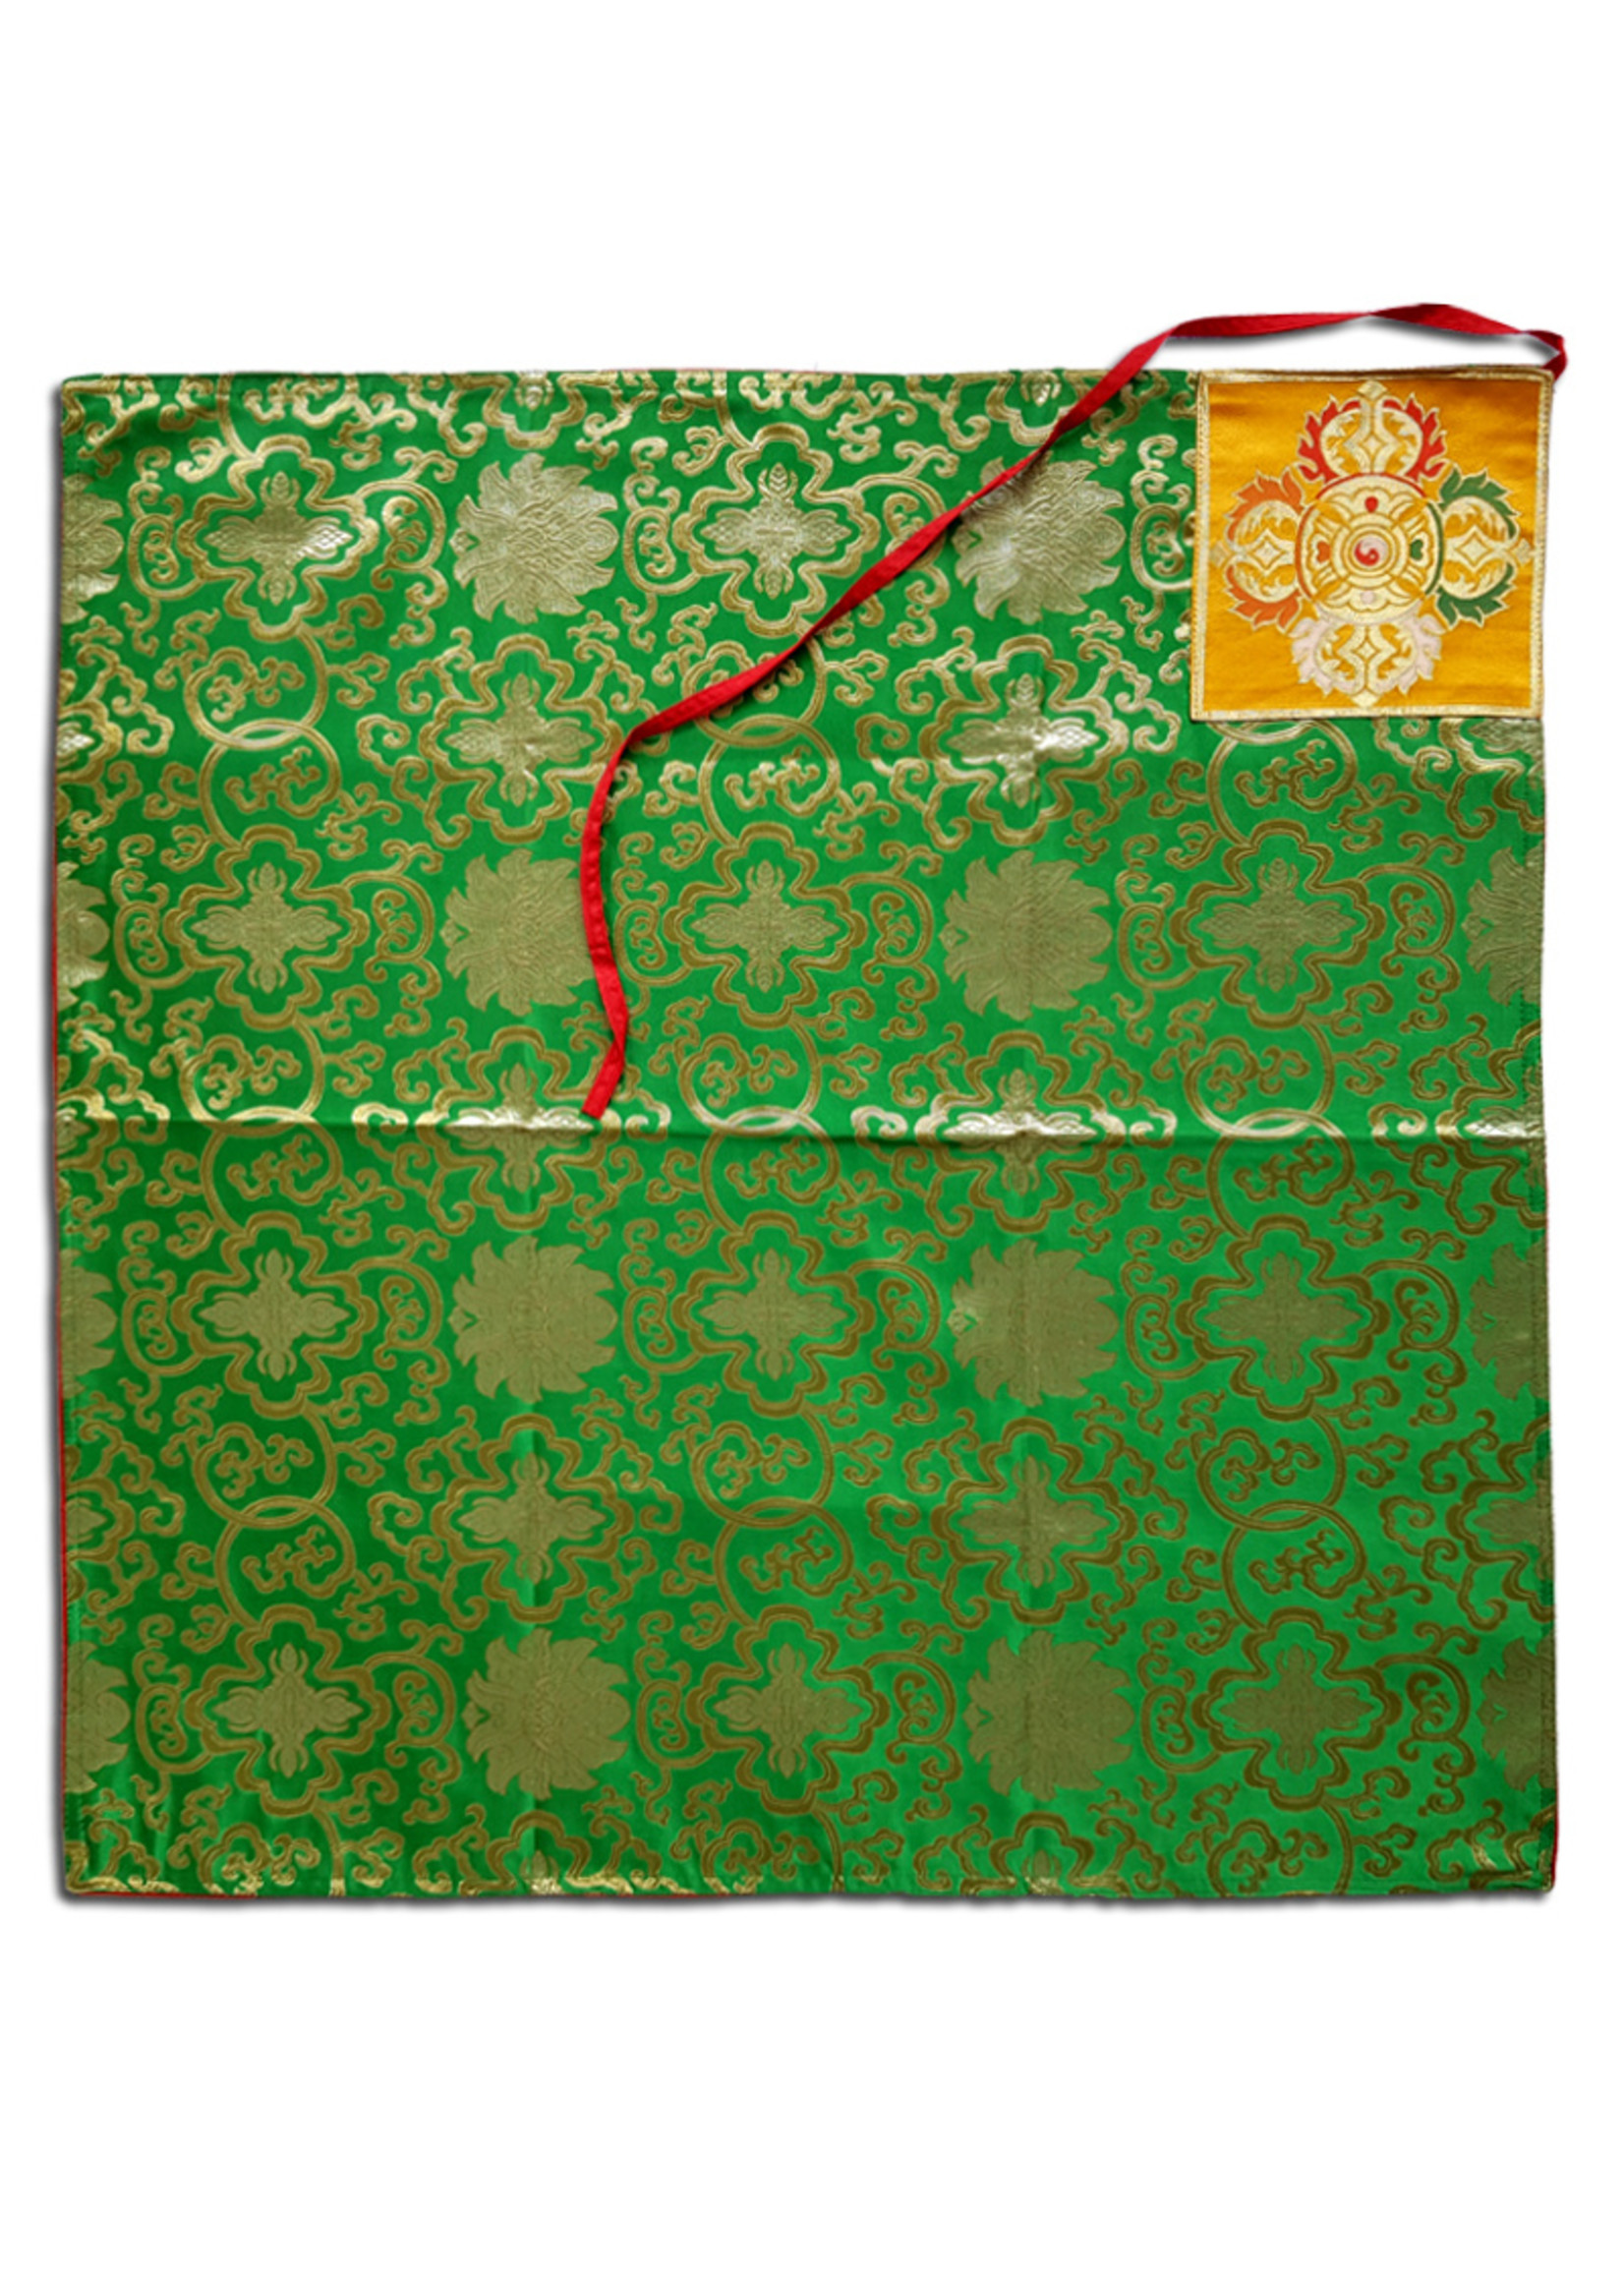 Tibetisches Buchumschlag-Tuch aus Seidenbrokat